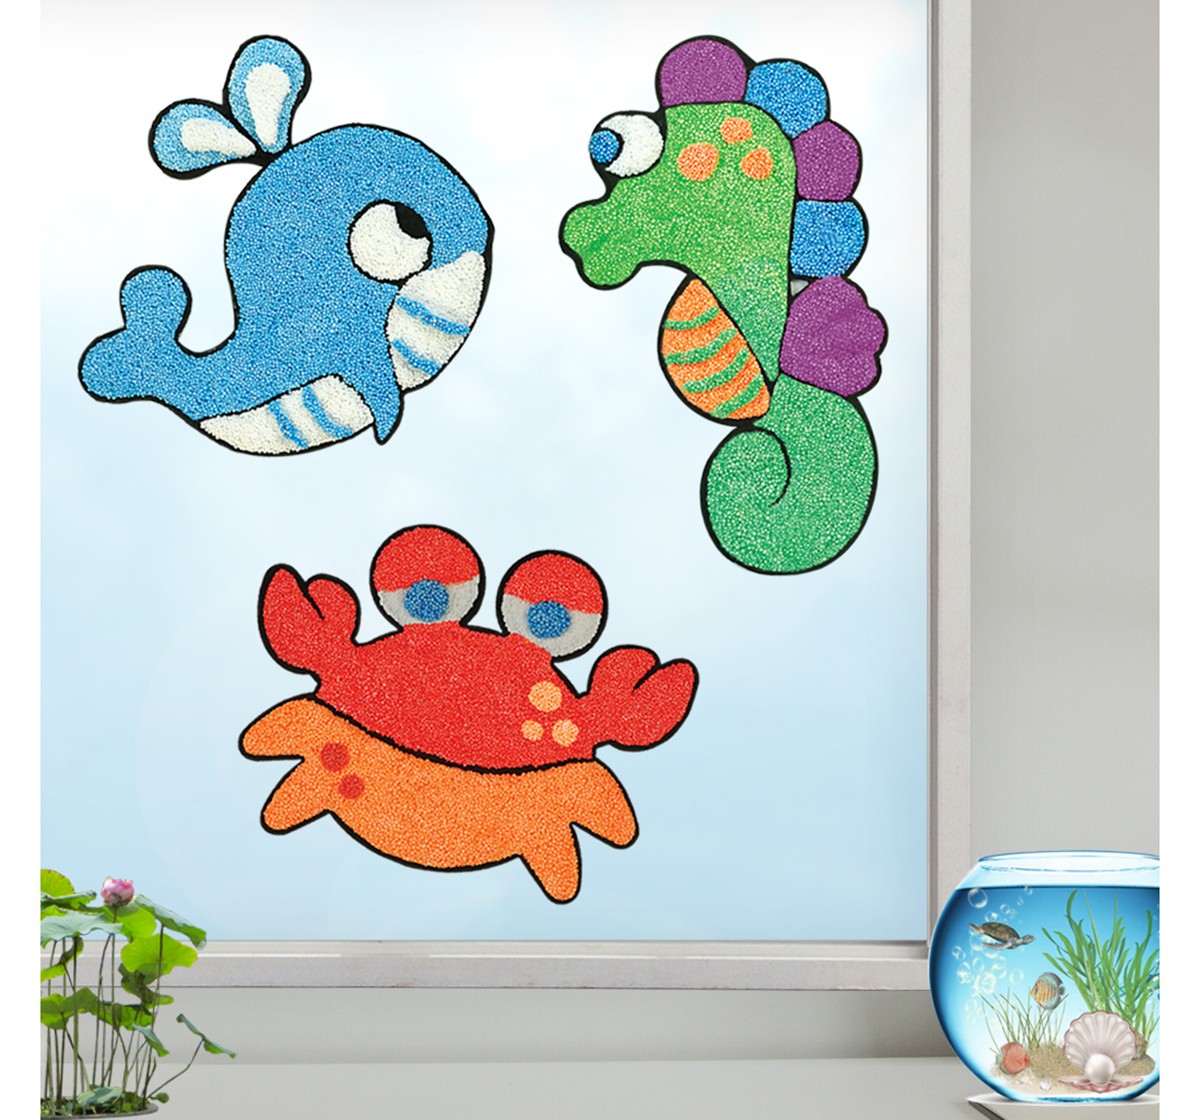 Imagimake Window Art - Aqua World, 2Y+ (Multicolor)